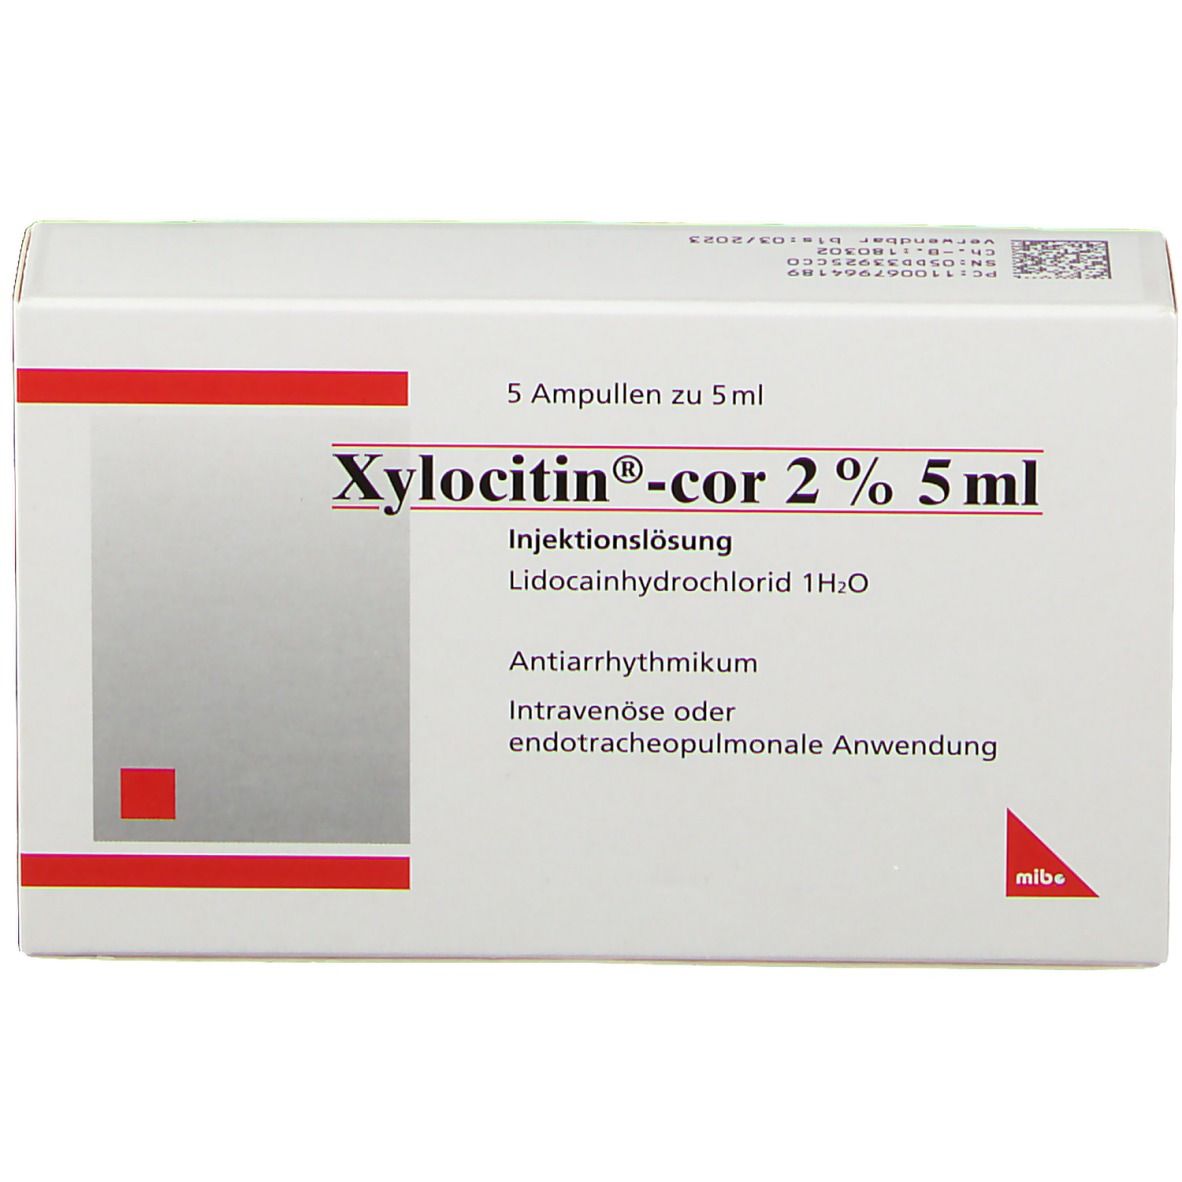 Xylocitin®-cor 2% 5 ml